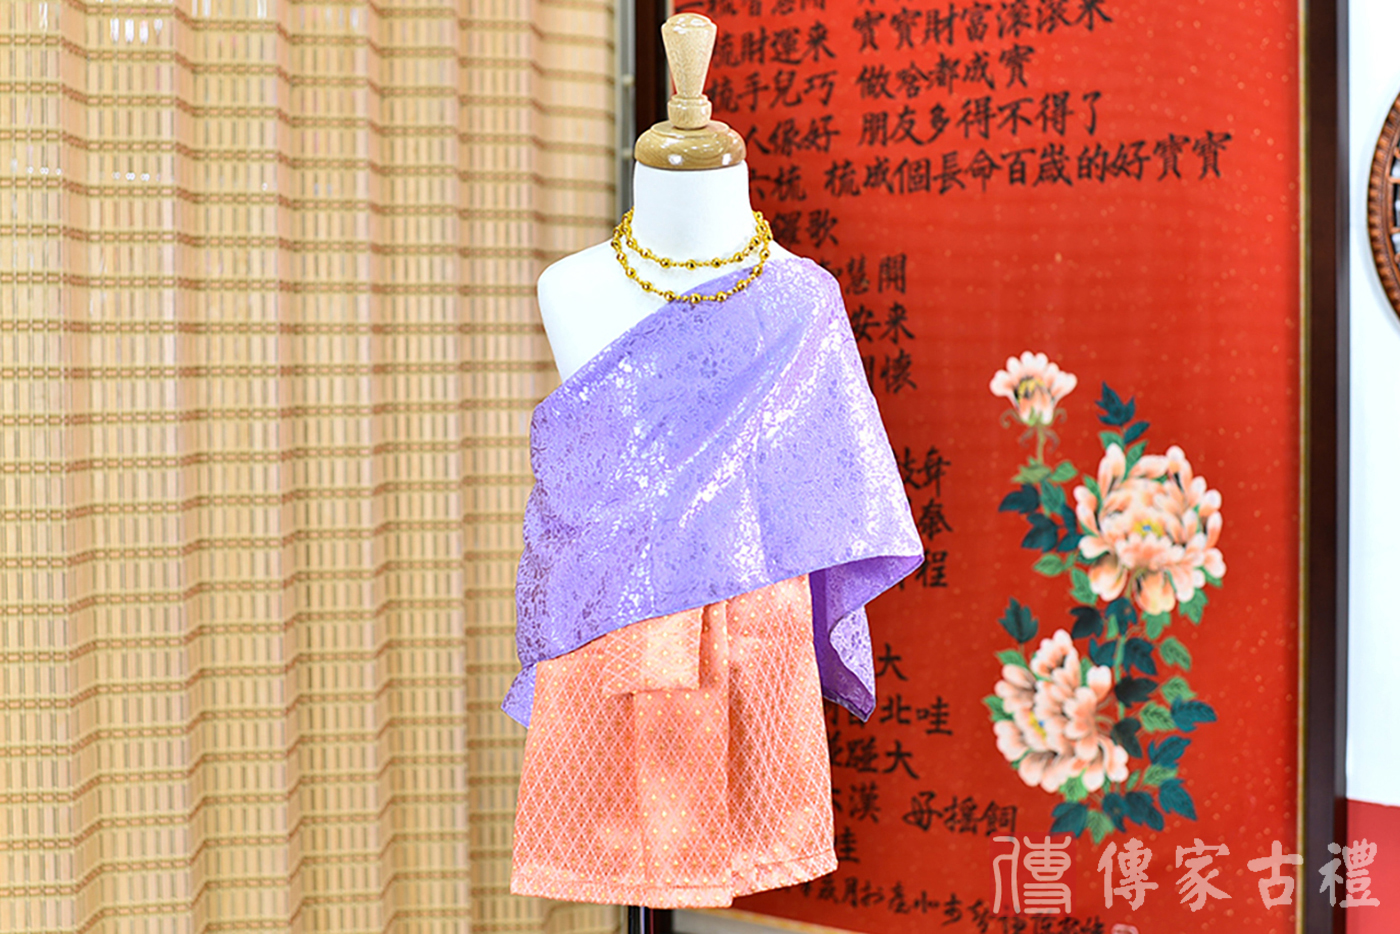 2024-02-23小孩皇室泰服古裝禮服。淺紫色的紋路披肩上衣搭配橘色格狀裙裝的泰式古裝禮服。照片集